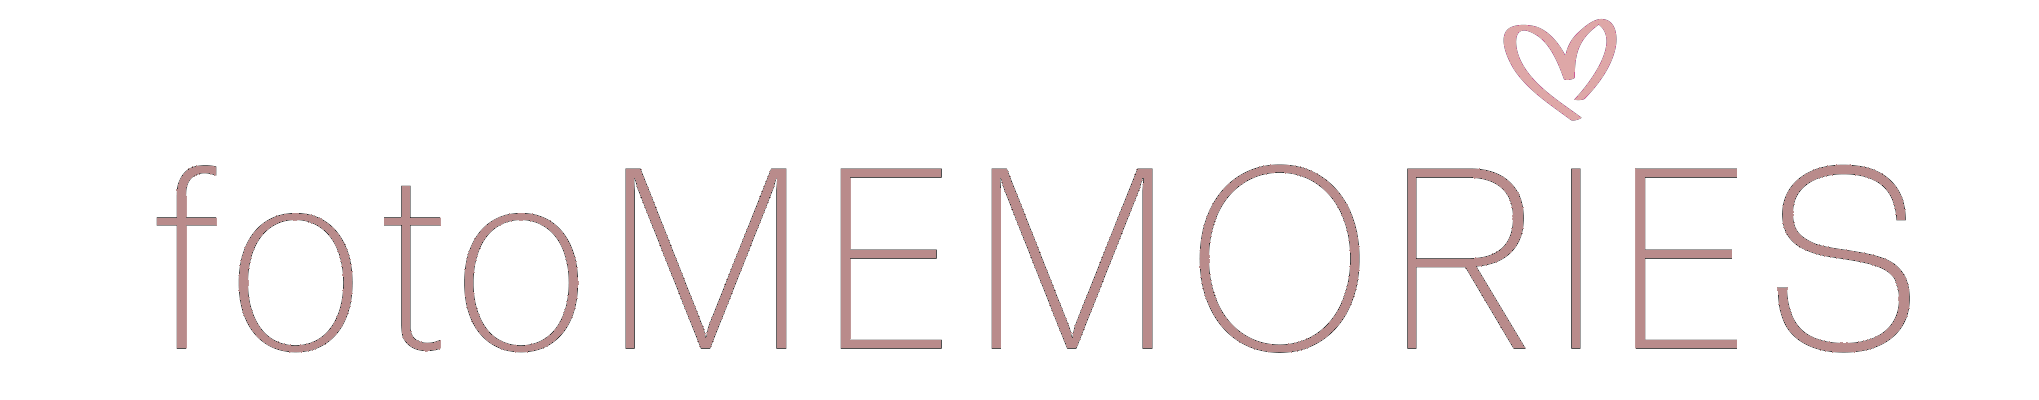 foMEMORIES-Logo-Kopie.png